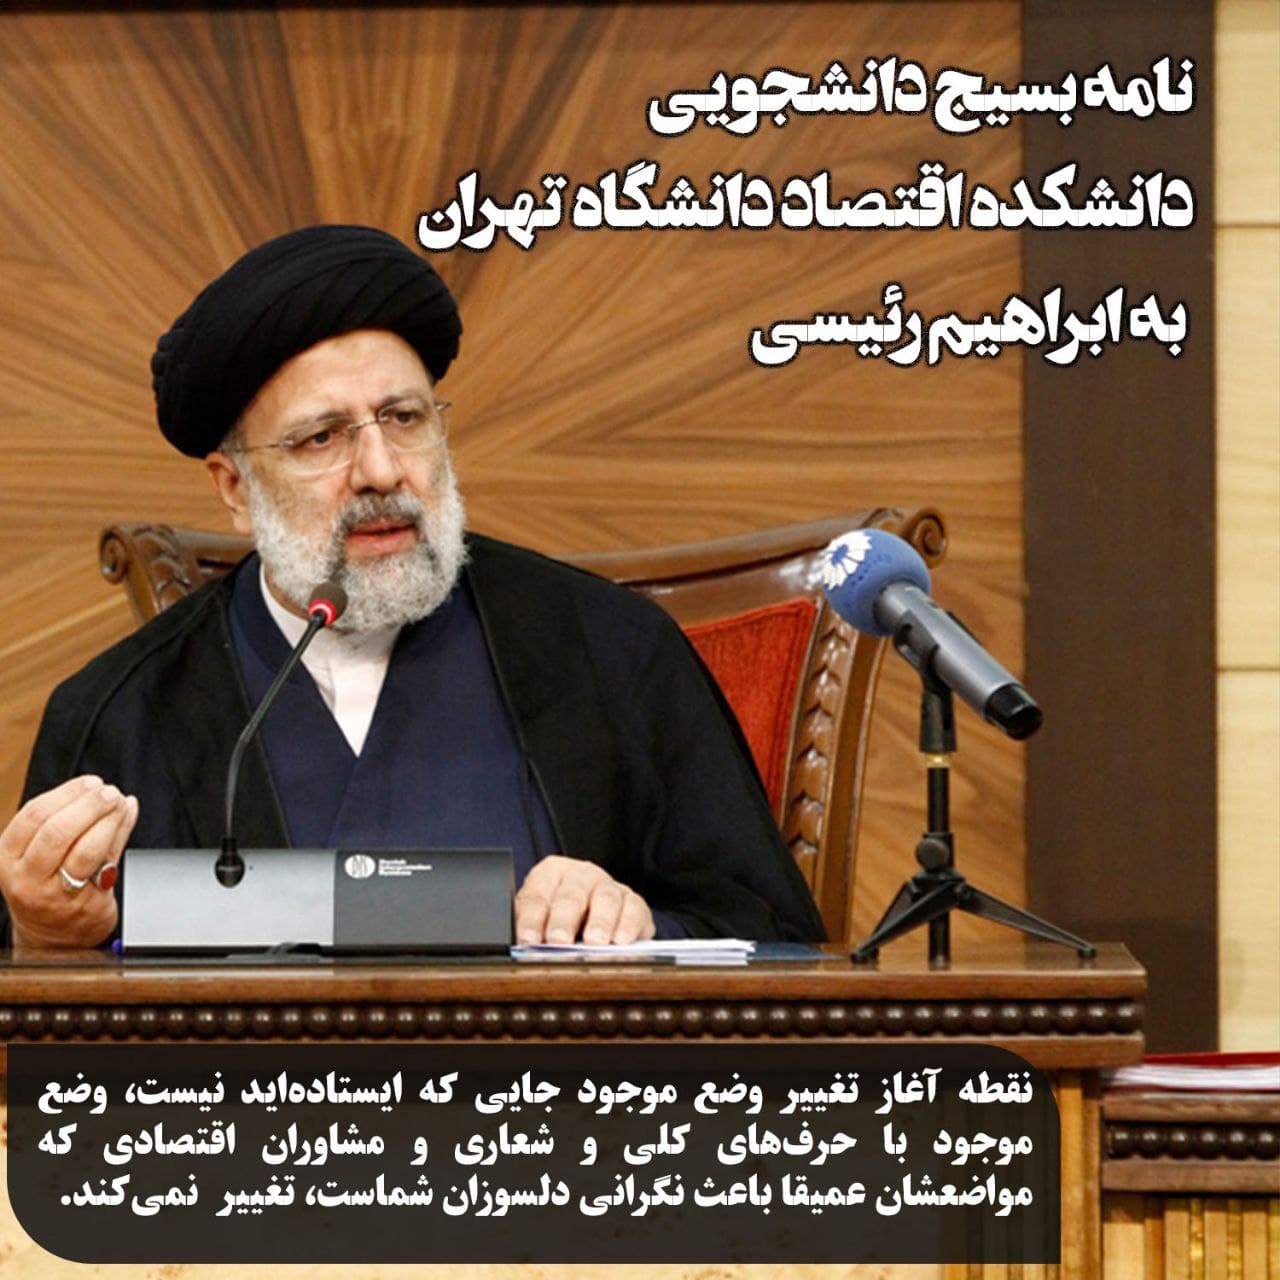 آقای رئیسی مواضع انتخاباتی روحانی کلید دار با مواضع شما فرقی ندارد